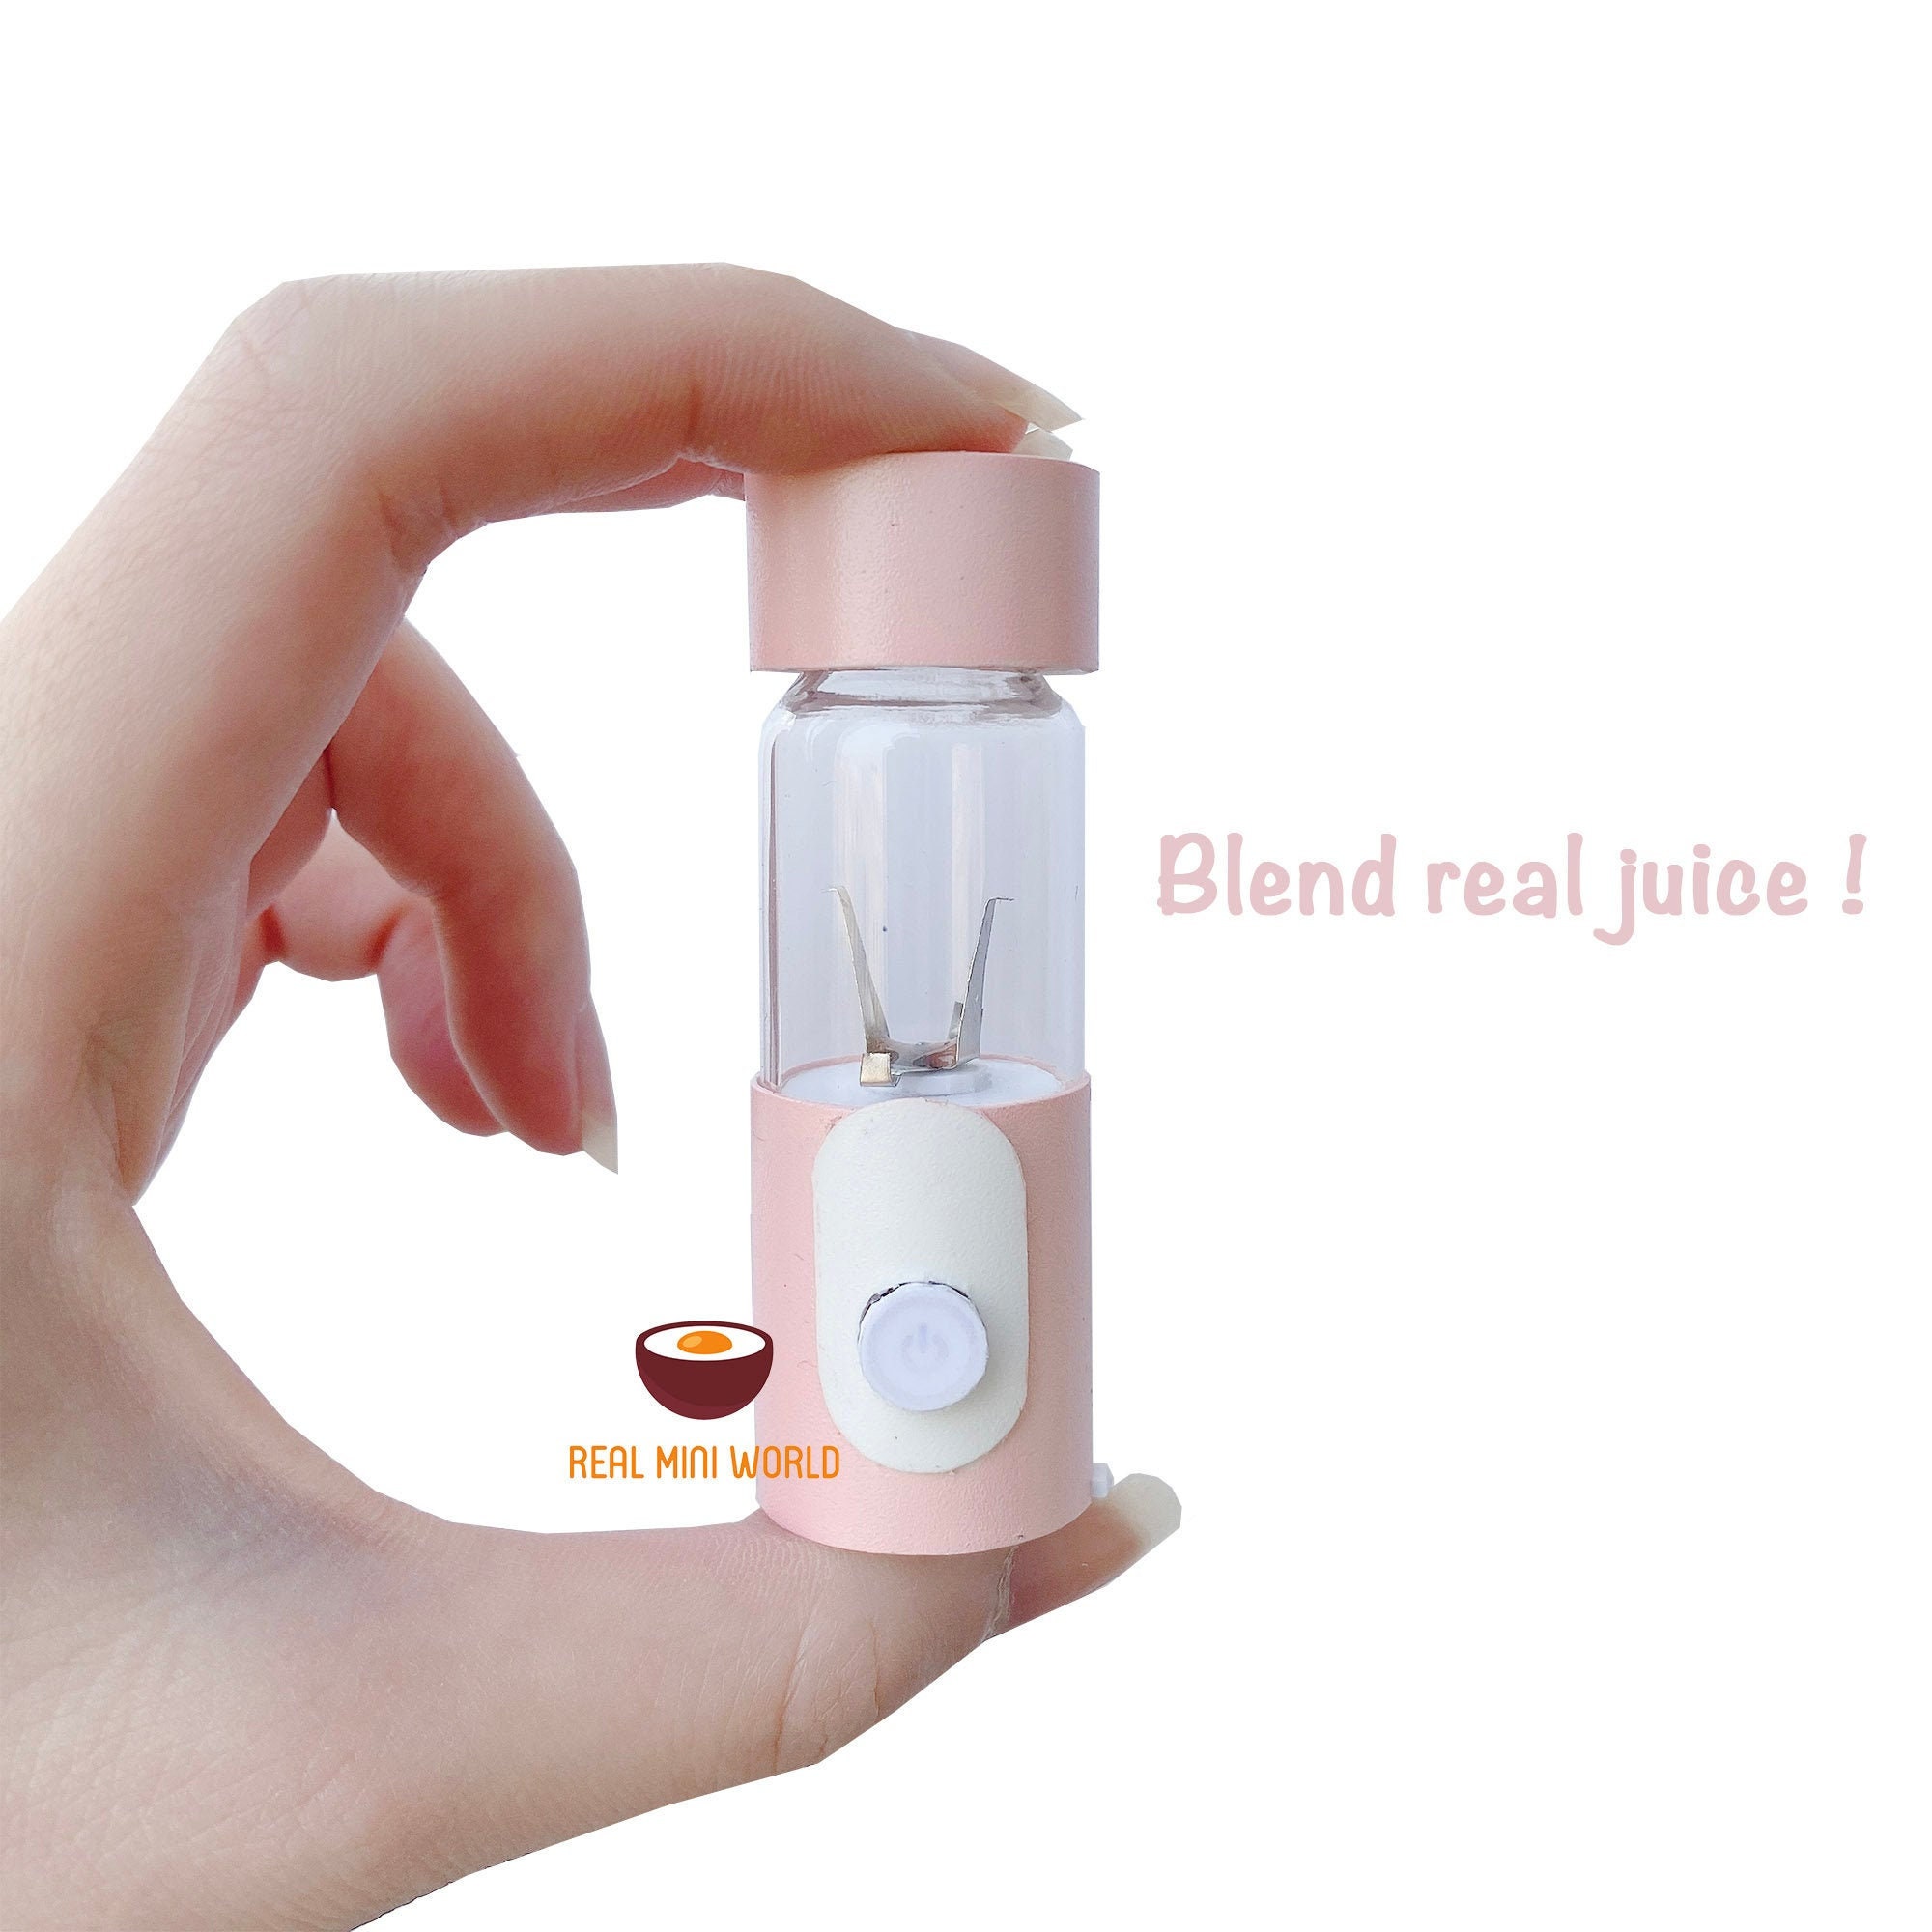 Real Working Miniature Juicer Blender Pastel Pink | Can Blend Real Fruit & Vegetables